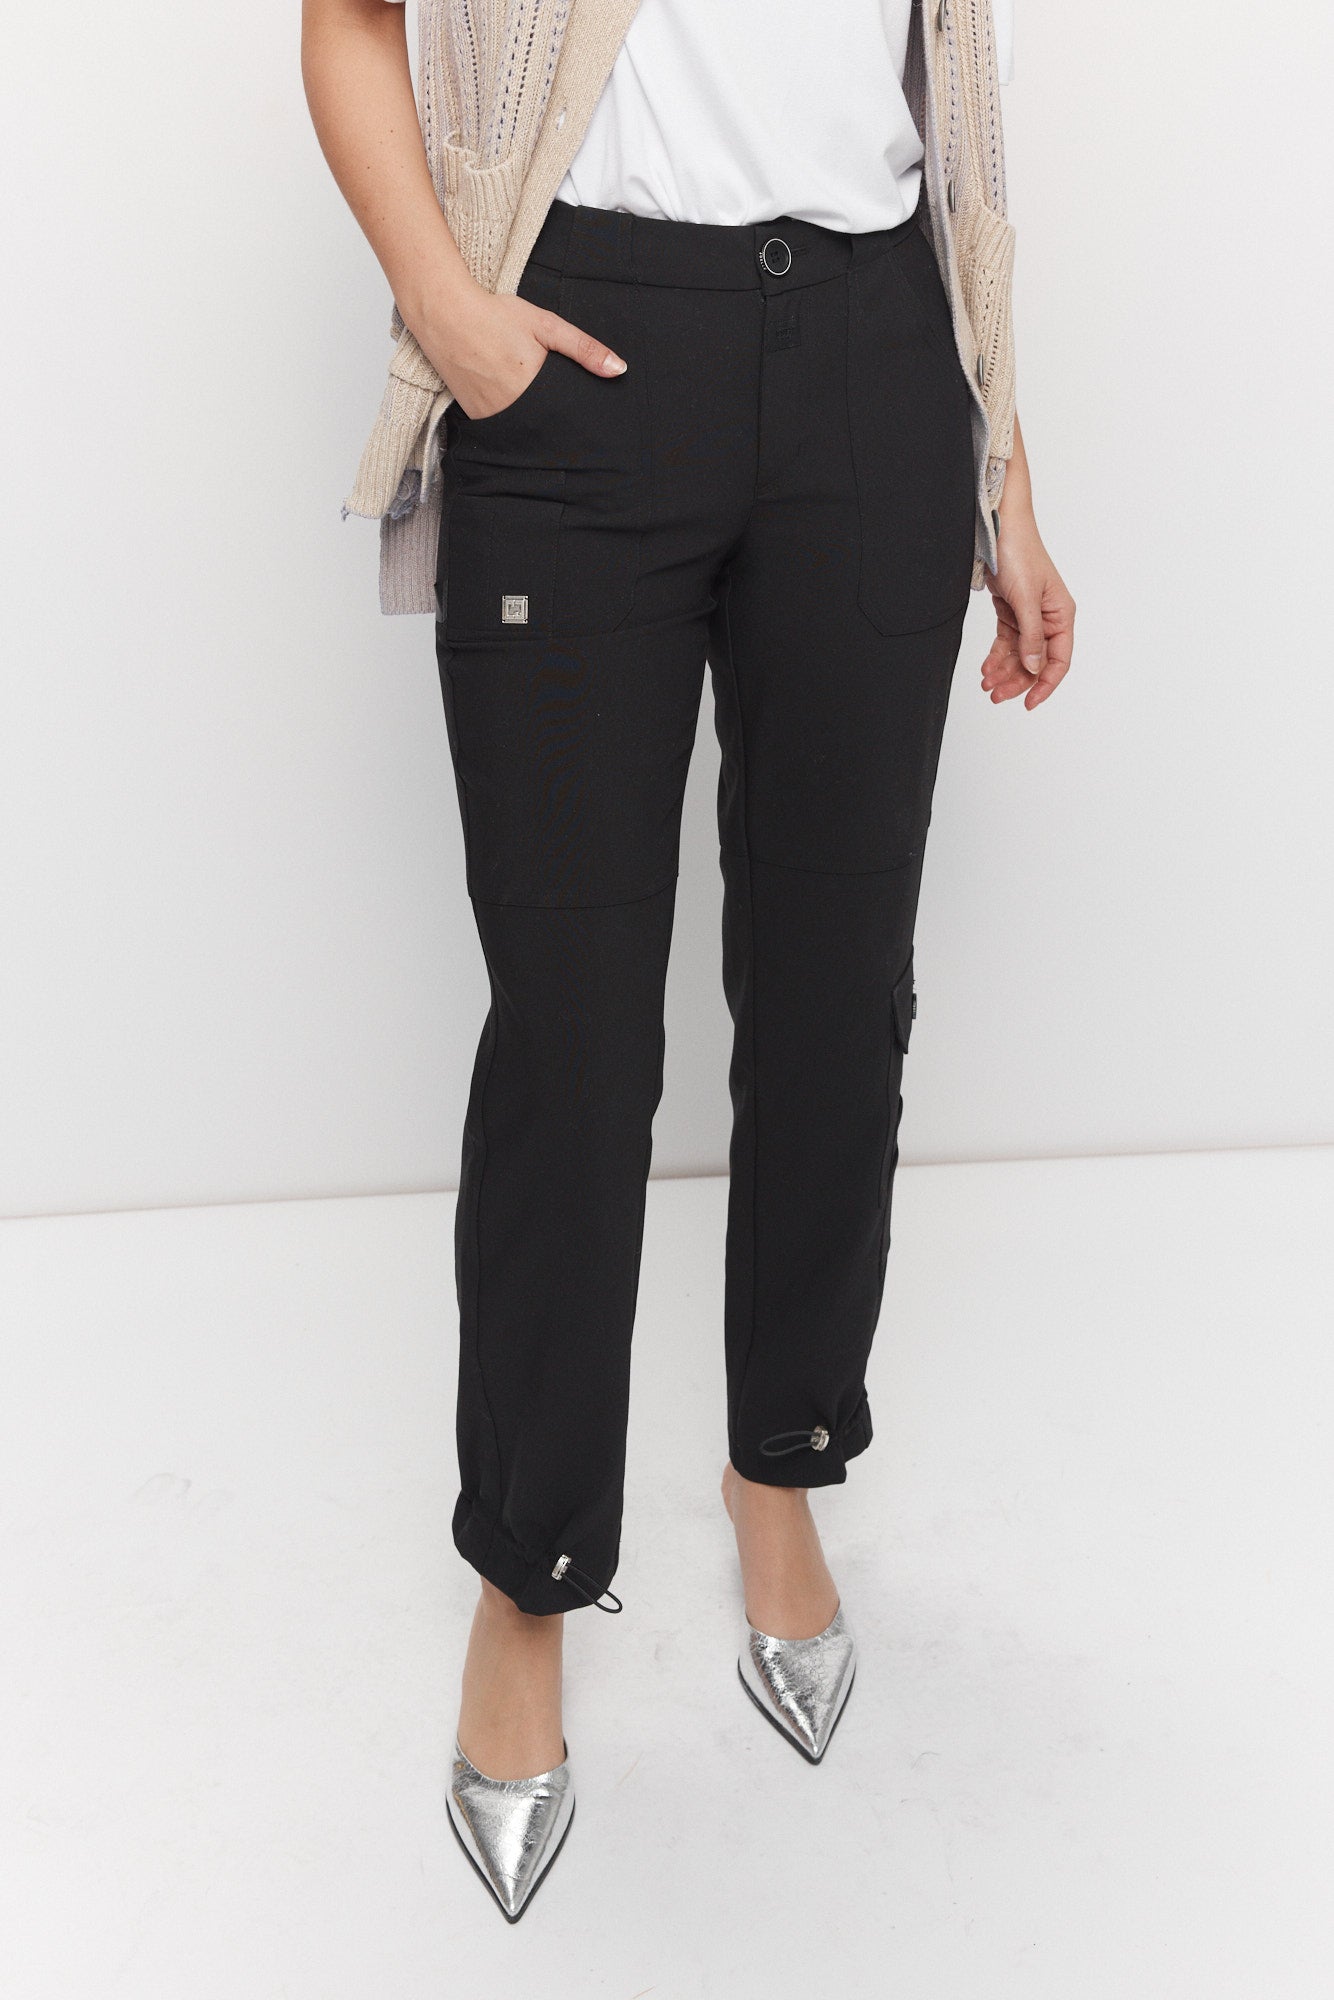 Pantalon noir cargo ajustable à la cheville | Frilay JOELLE Collection